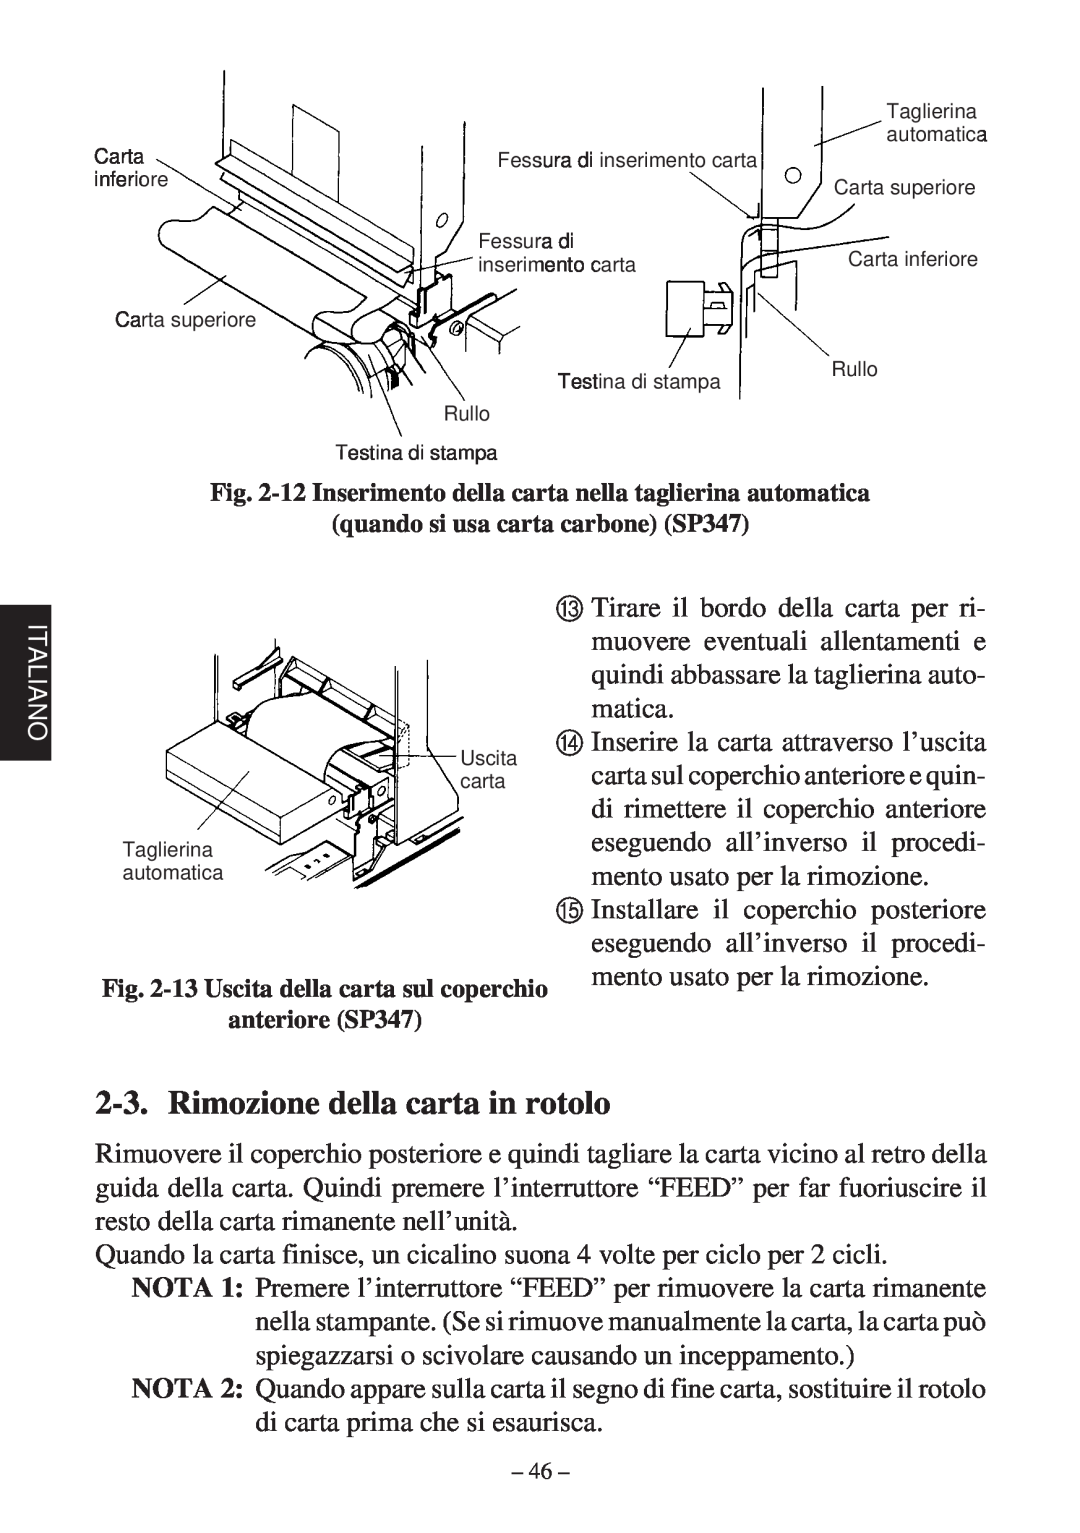 Star Micronics 347F user manual Rimozione della carta in rotolo 